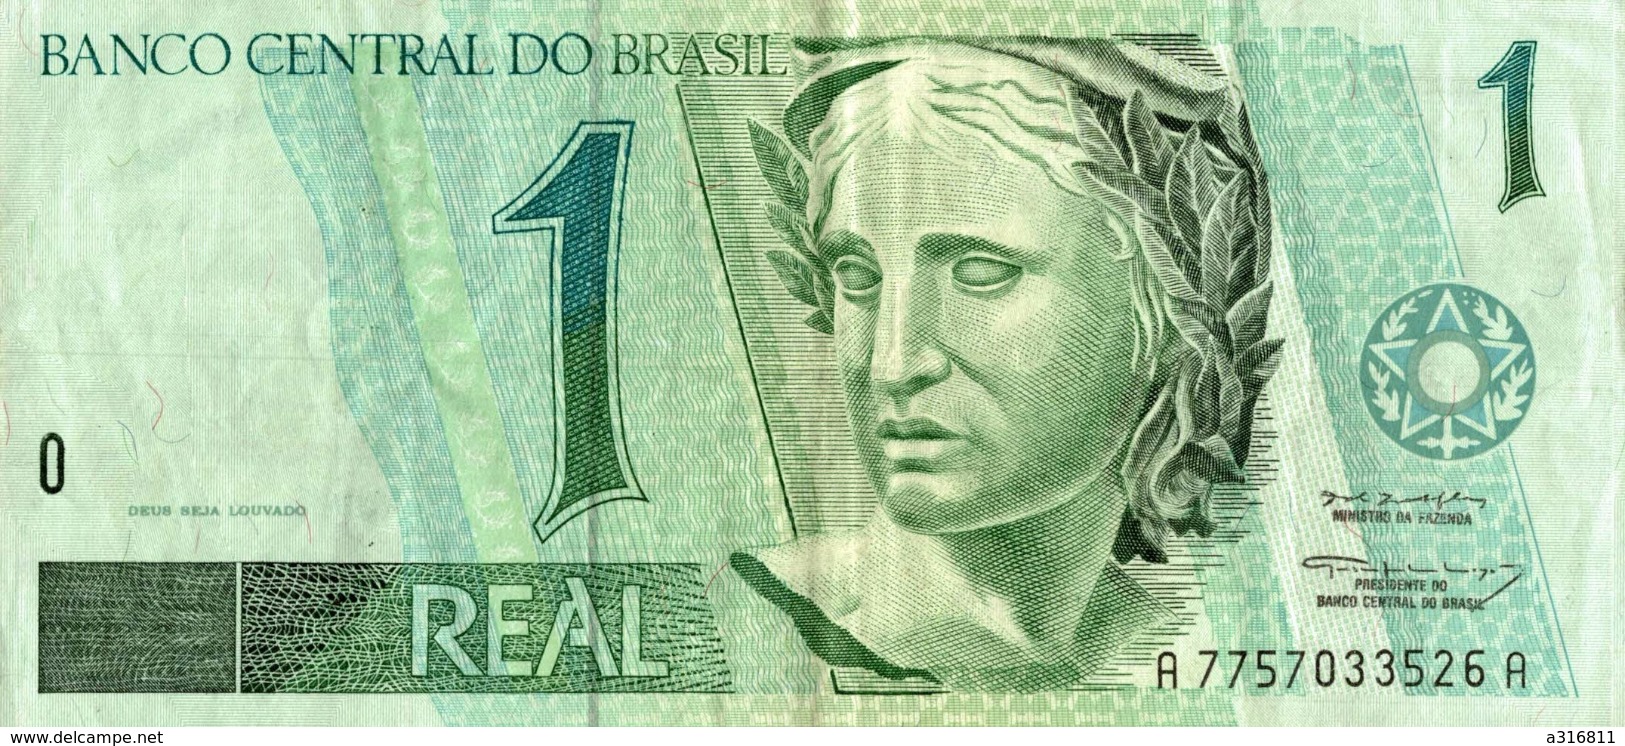 BANCO CENTRAL DO BRASIL - Brasil